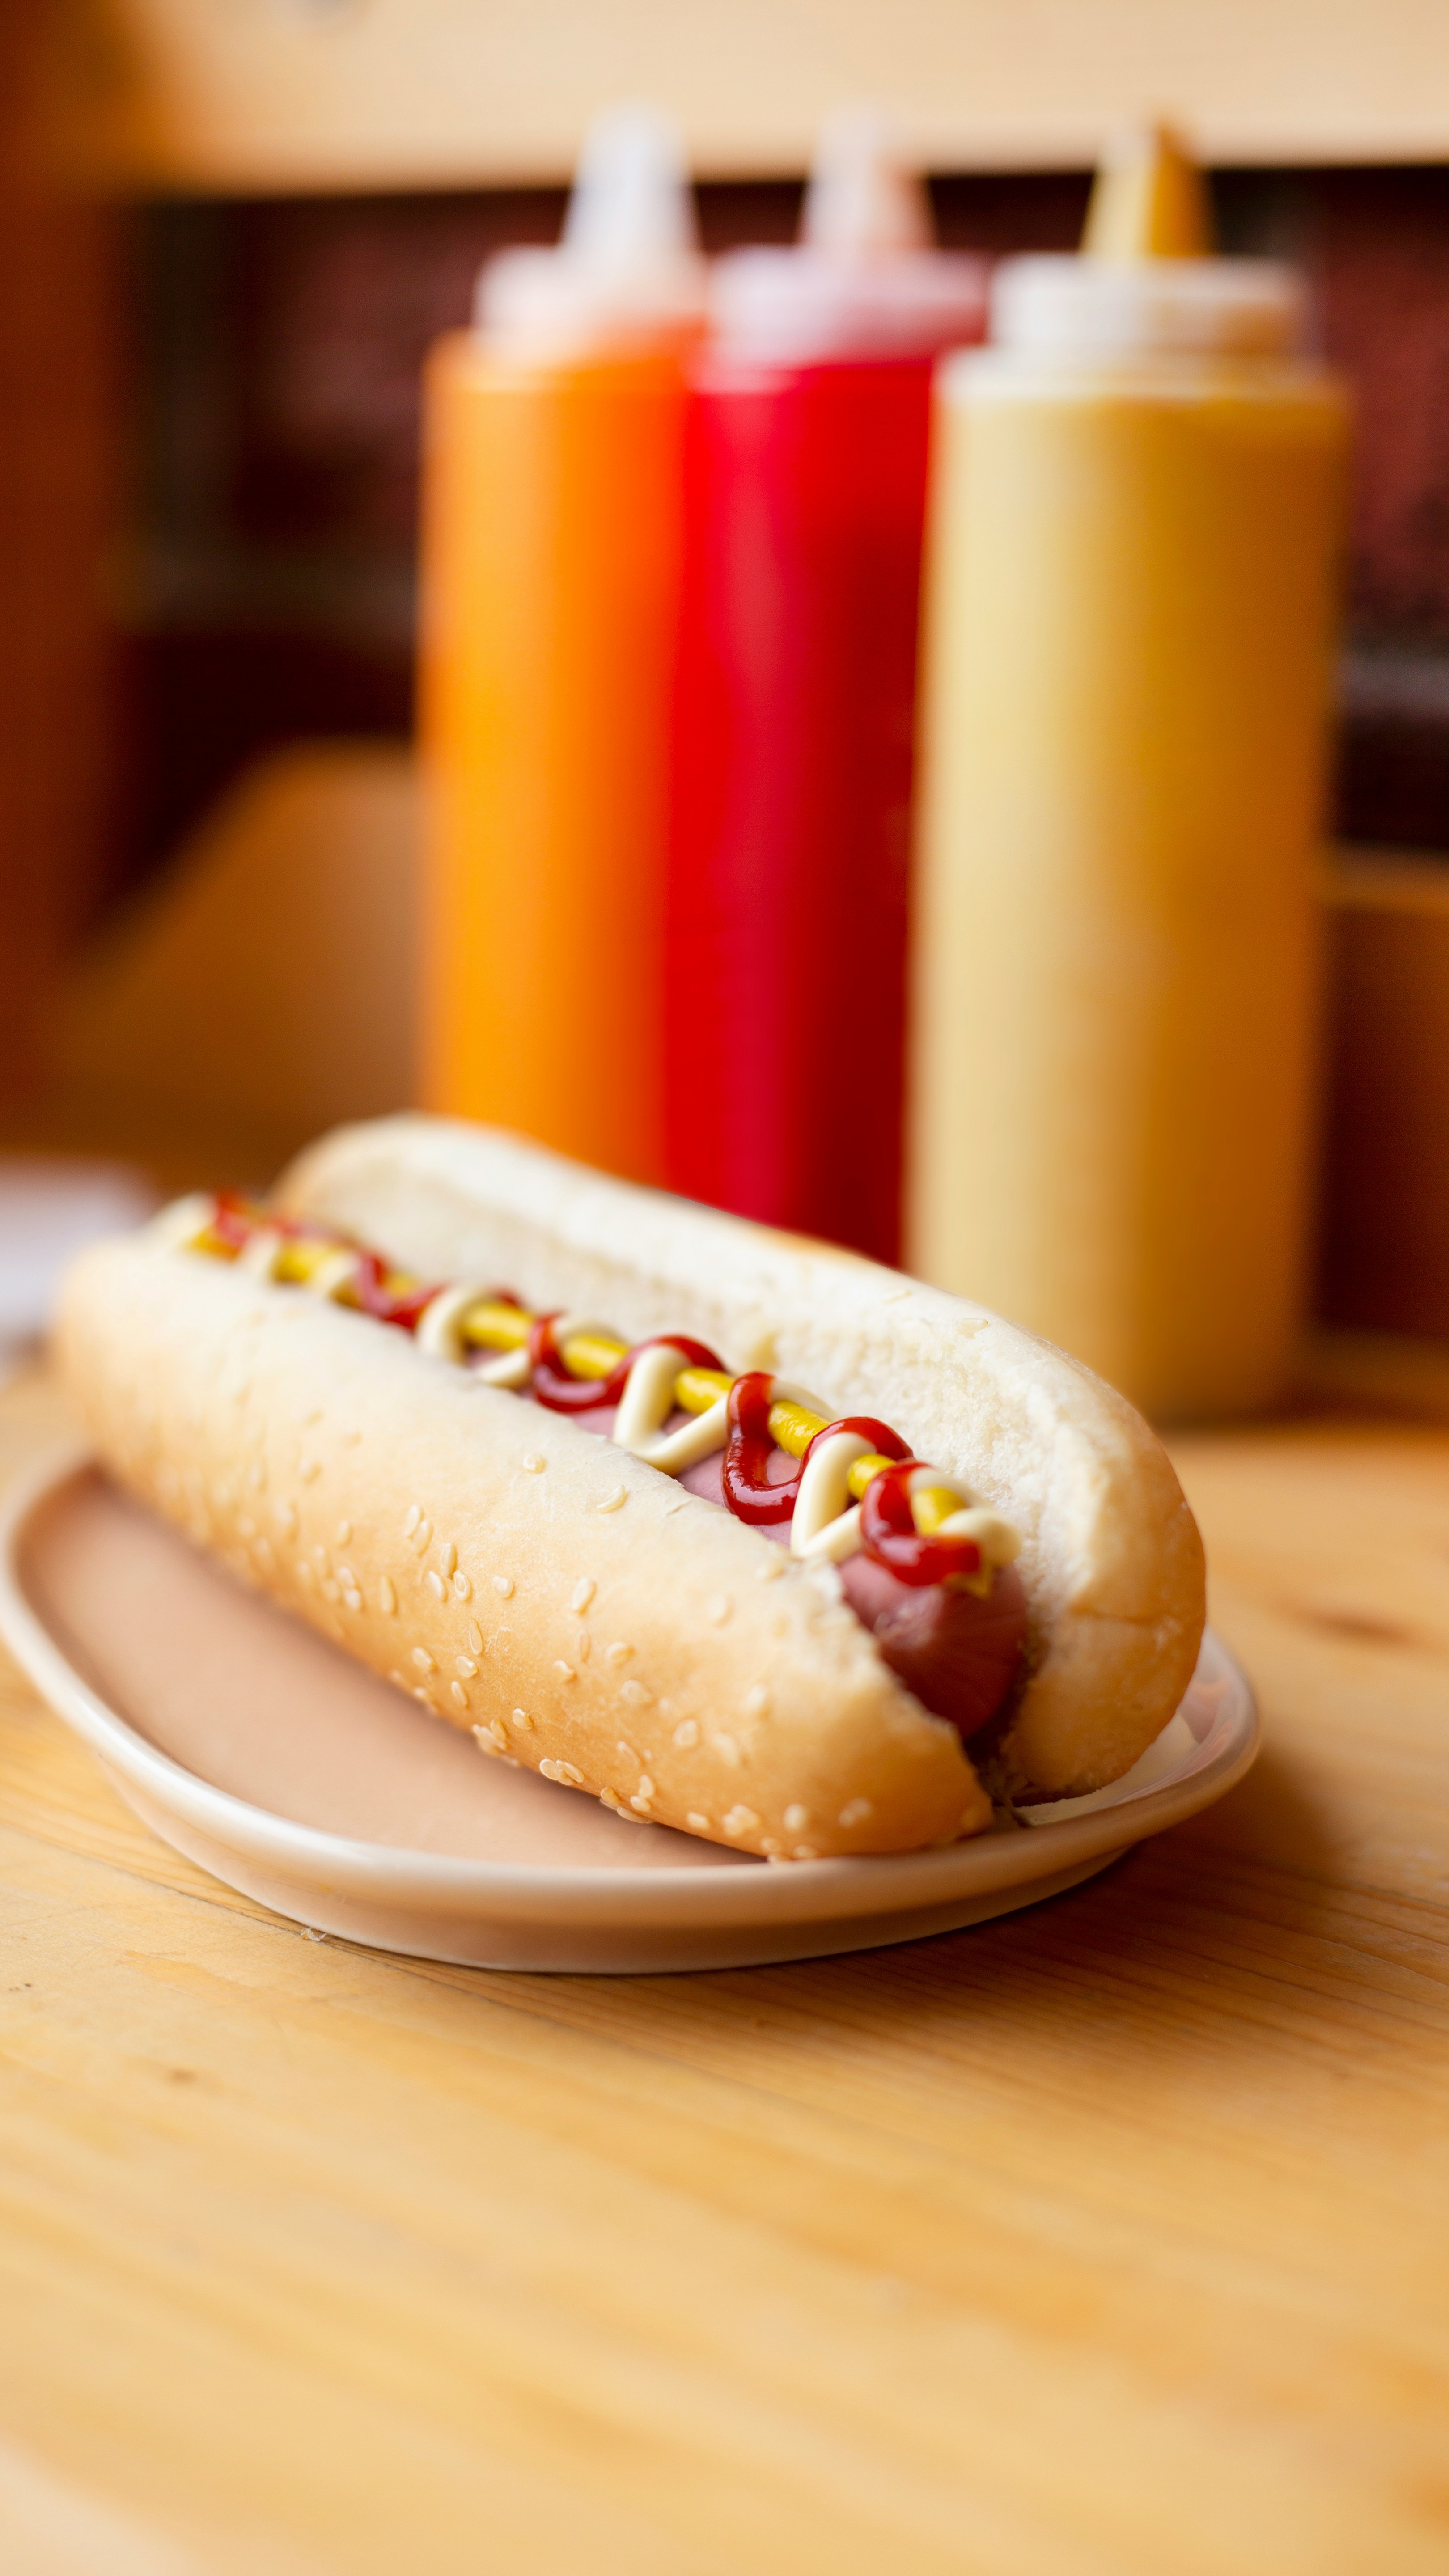 Les Québécois aiment davantage les hot-dogs grillés